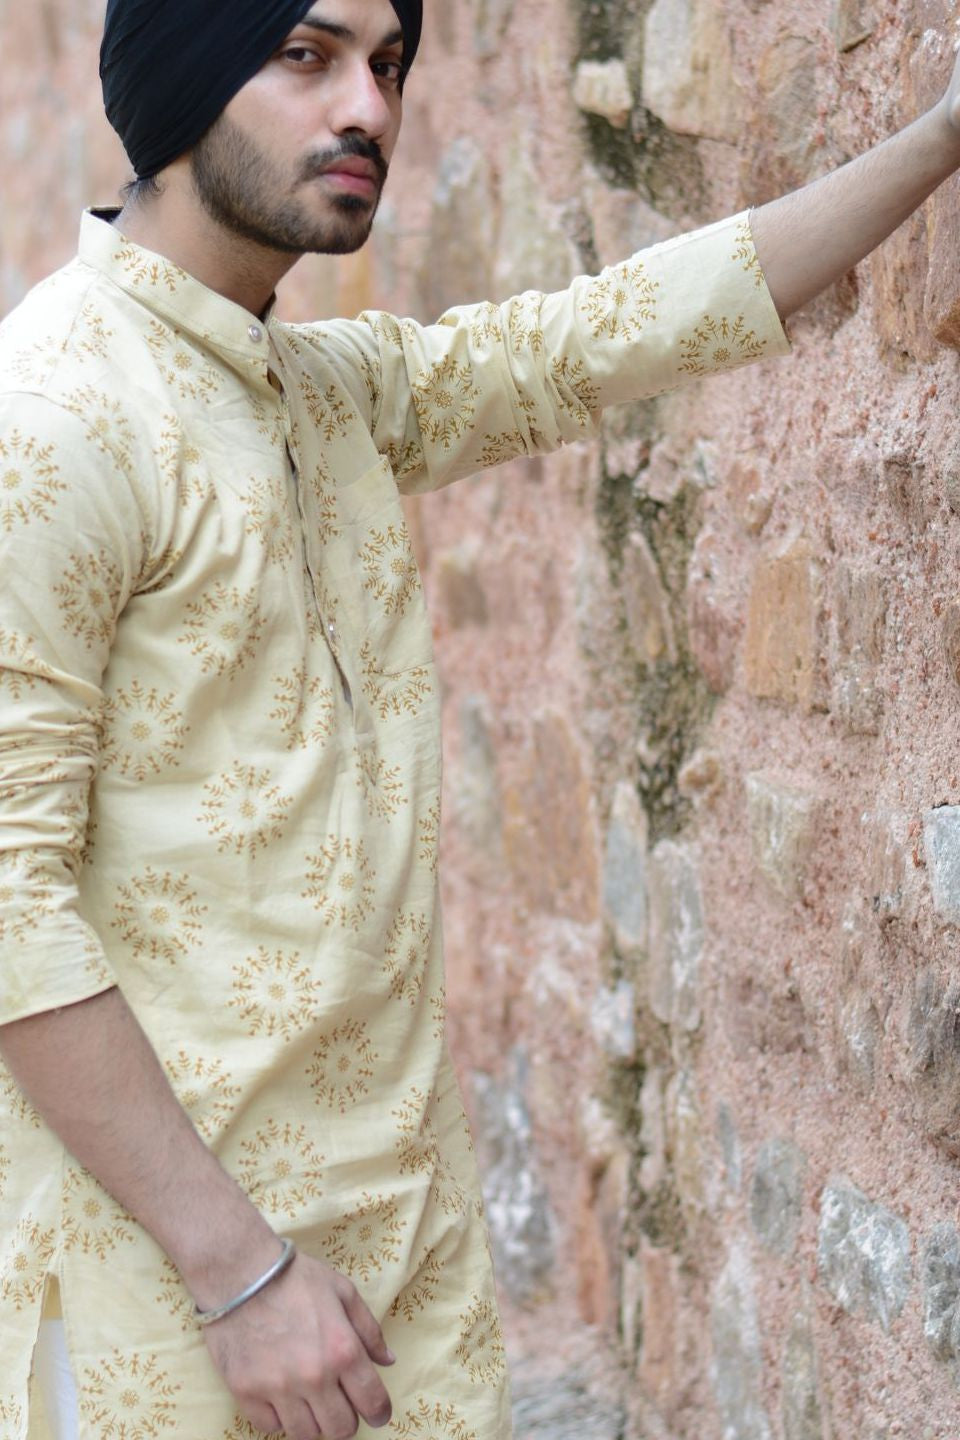 Jaipur 100% Cotton Yellow Long Kurta Pajama